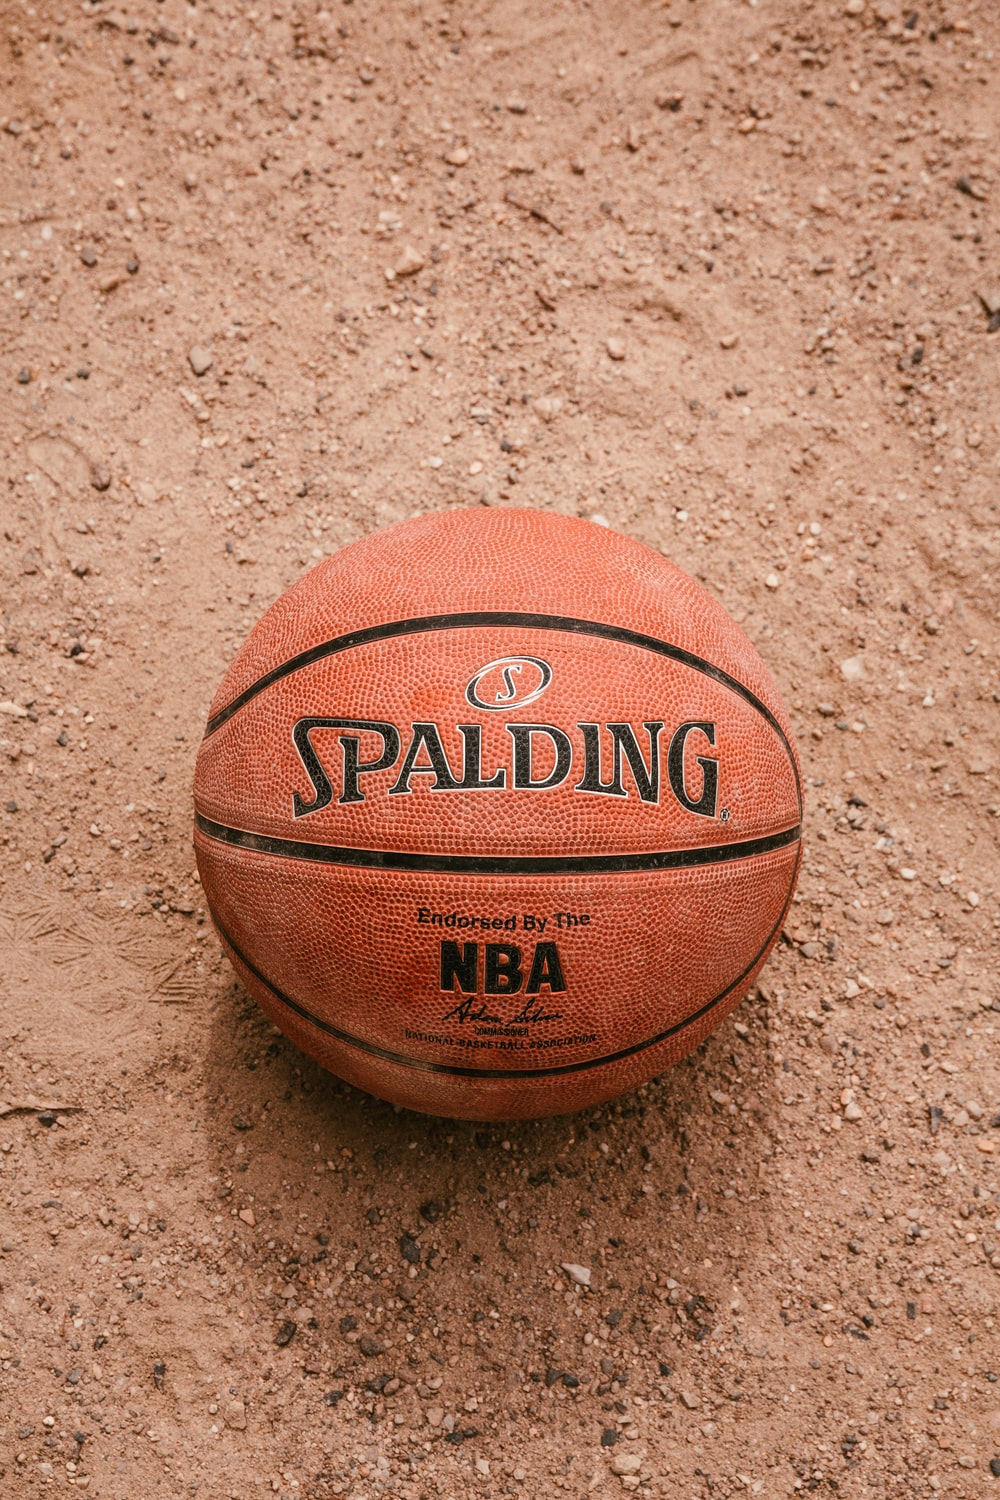 Basketball Ball Wallpapers